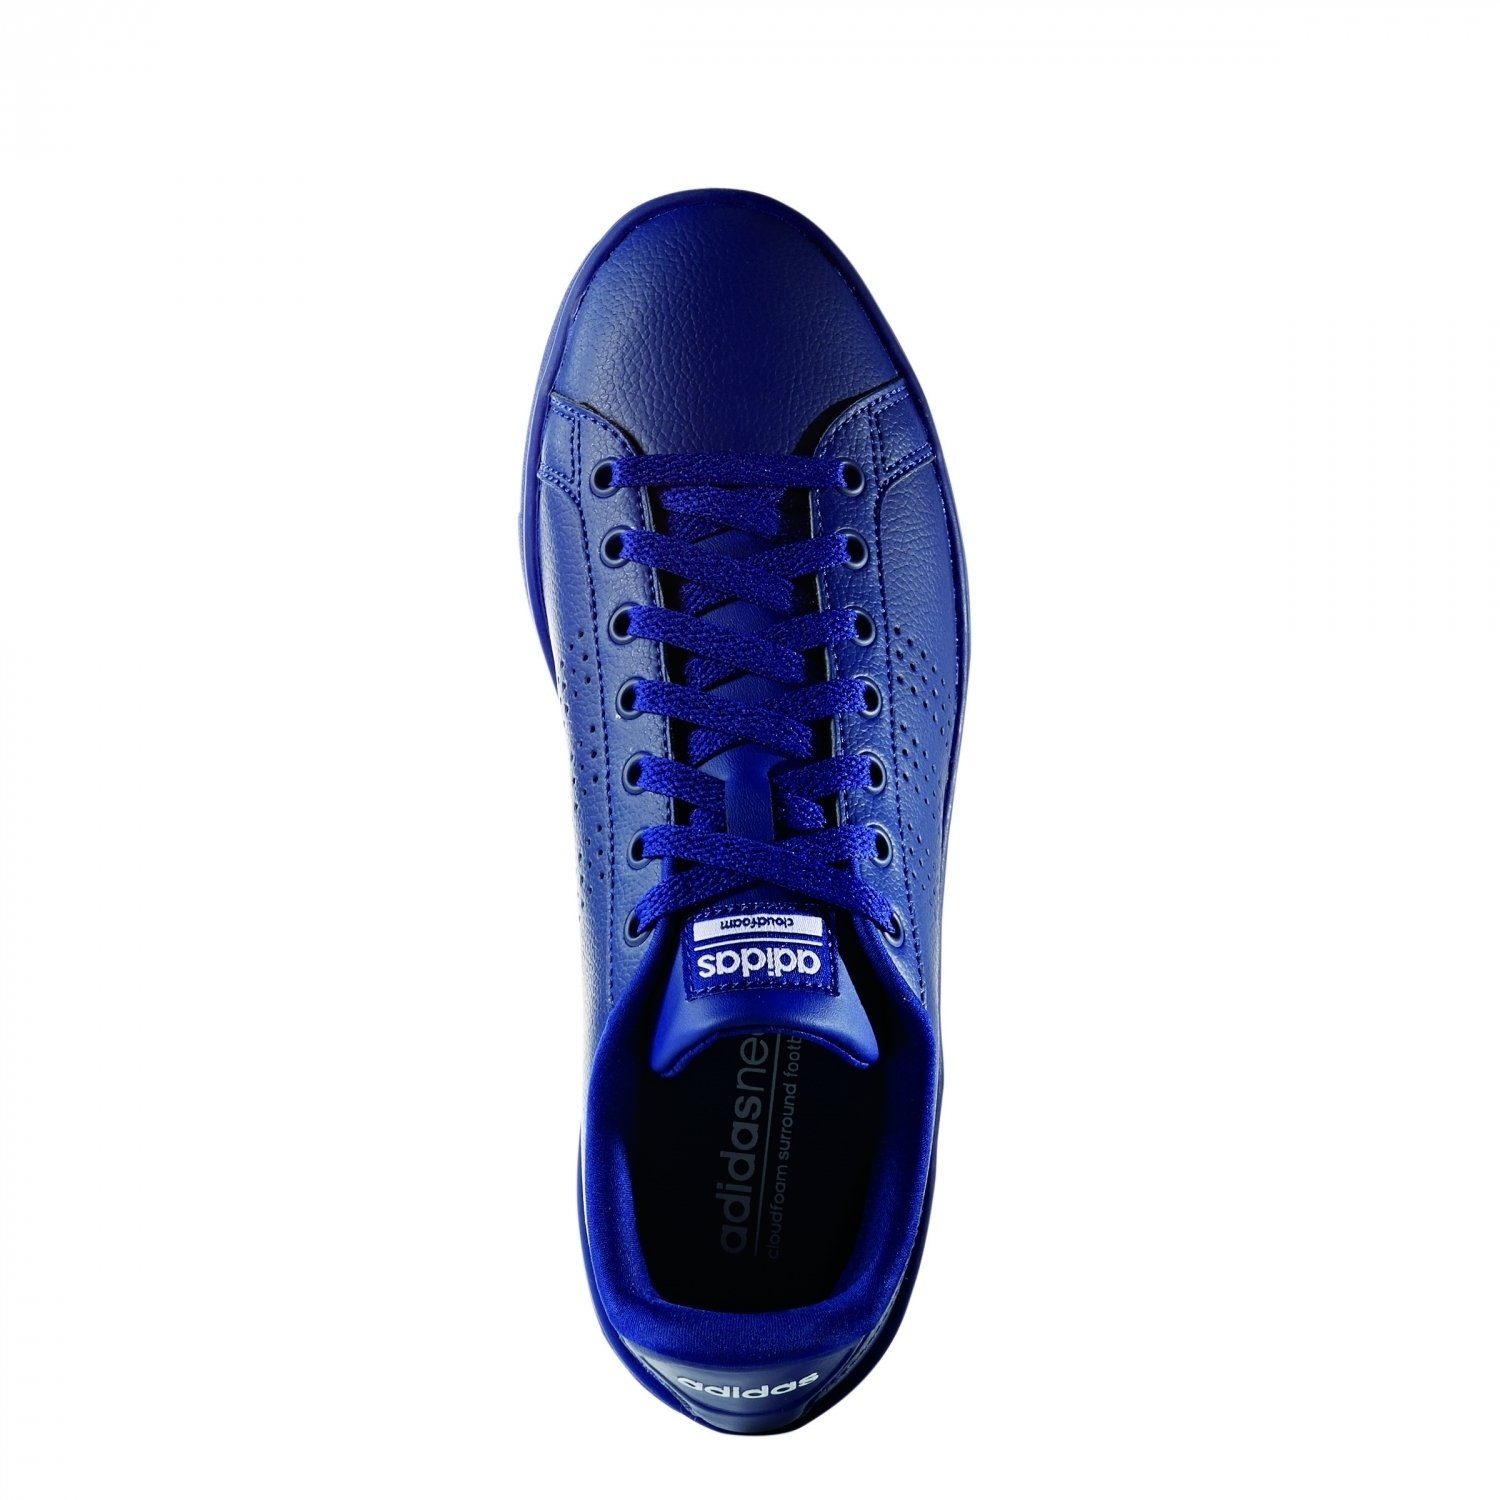 adidas Sportswear Cloudfoam Advantage Clean Damen Sneaker blau Sneaker